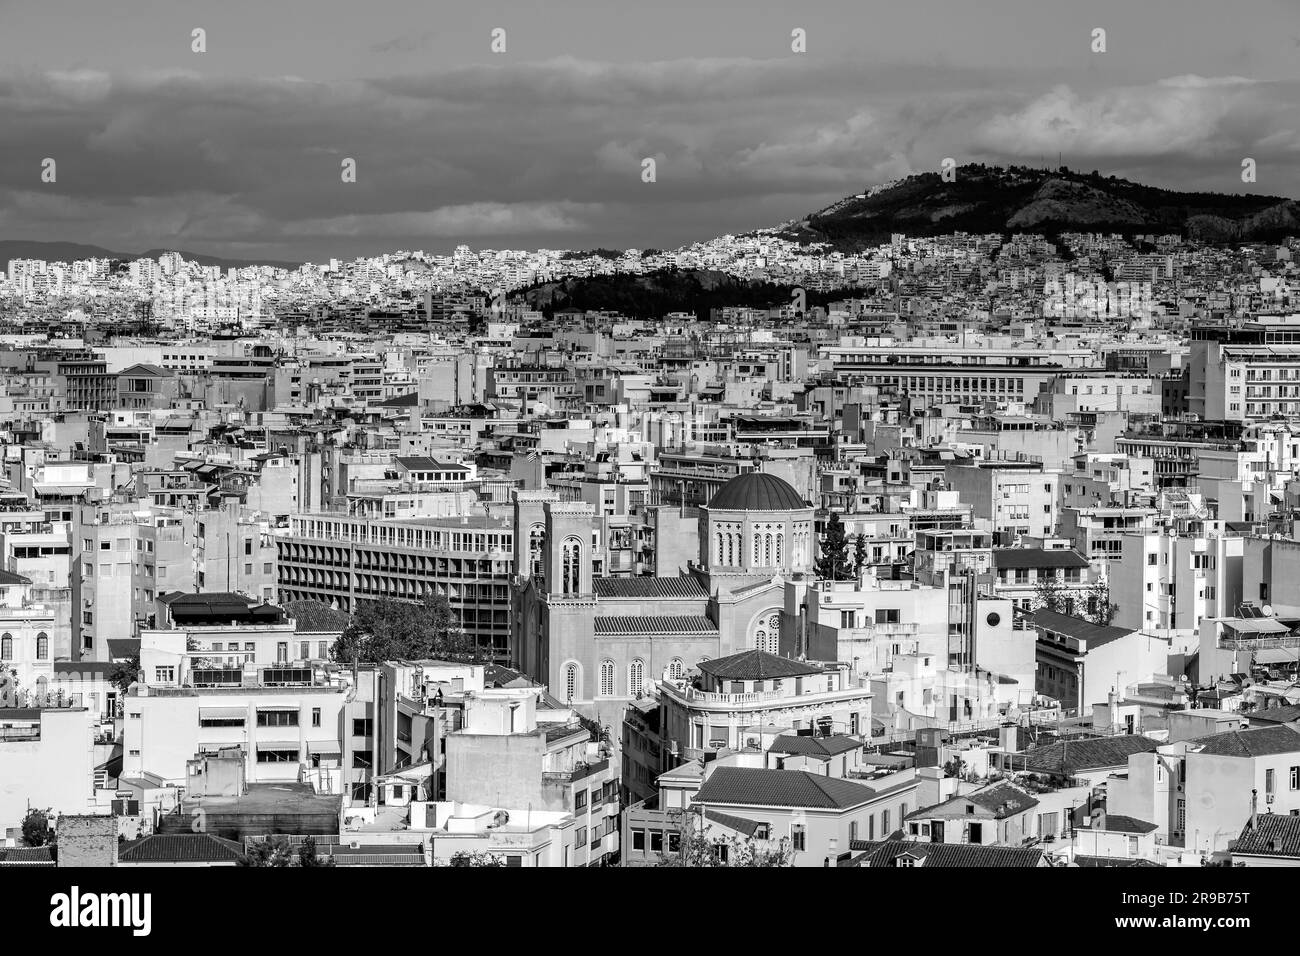 Atene, Grecia - 25 novembre 2021: Vista aerea di Atene, la capitale greca. Foto Stock